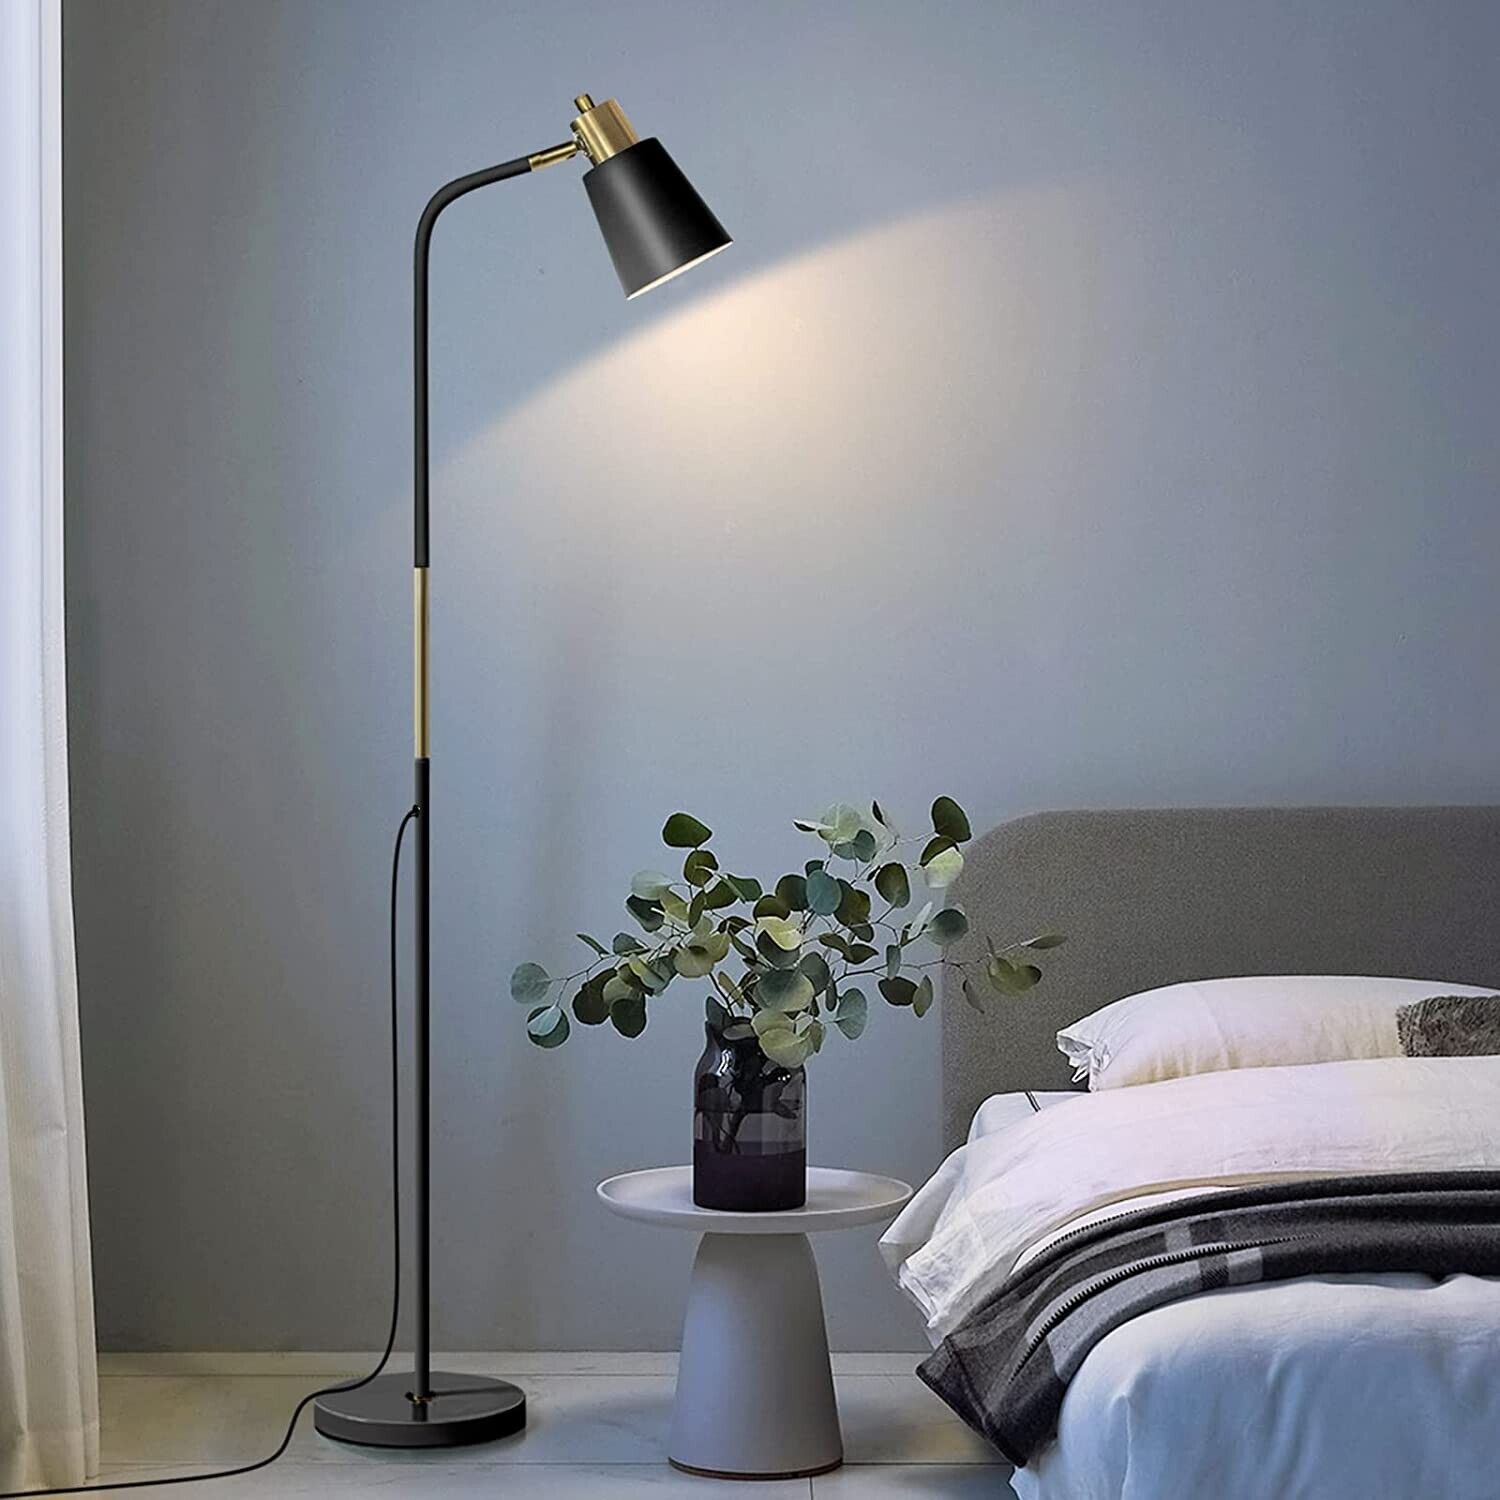 Floor Lamp, Industrial Floor Lamps for Living Rooms & Bedrooms - Rustic Farmhous